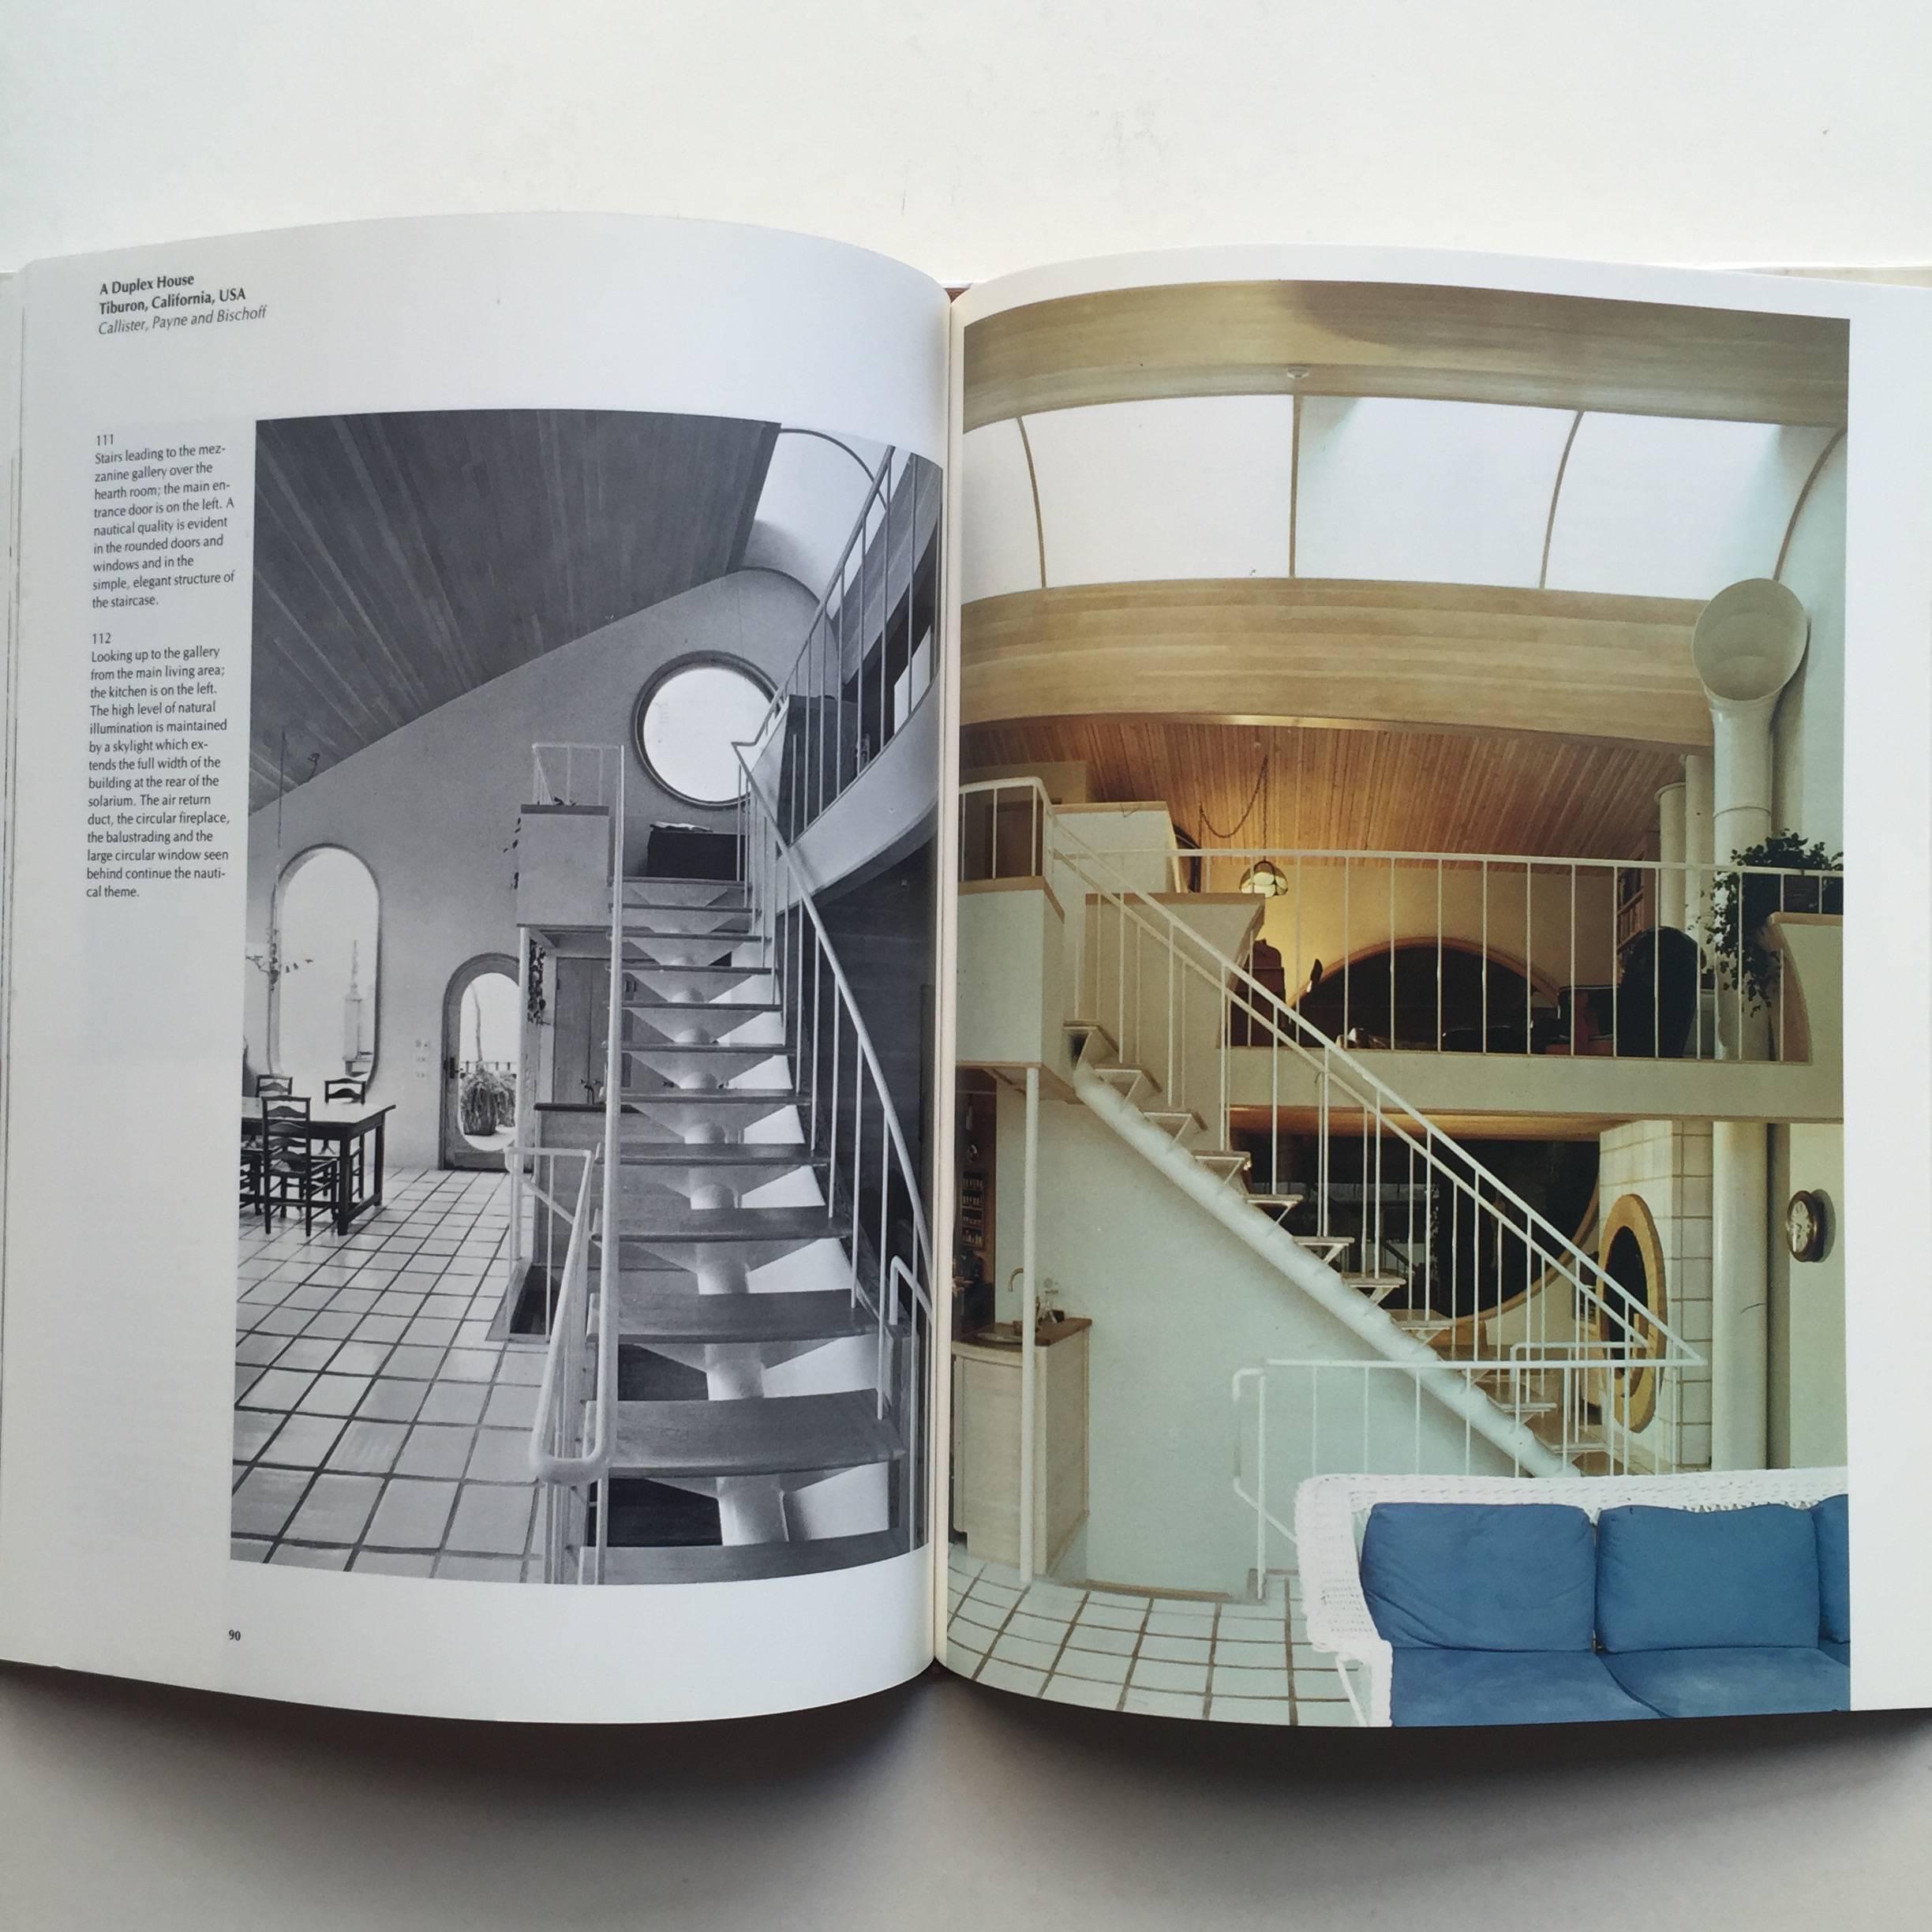 Art décoratif et intérieurs modernes, aménagements d'intérieurs pour les personnes, 1980 Excellent état à London, GB